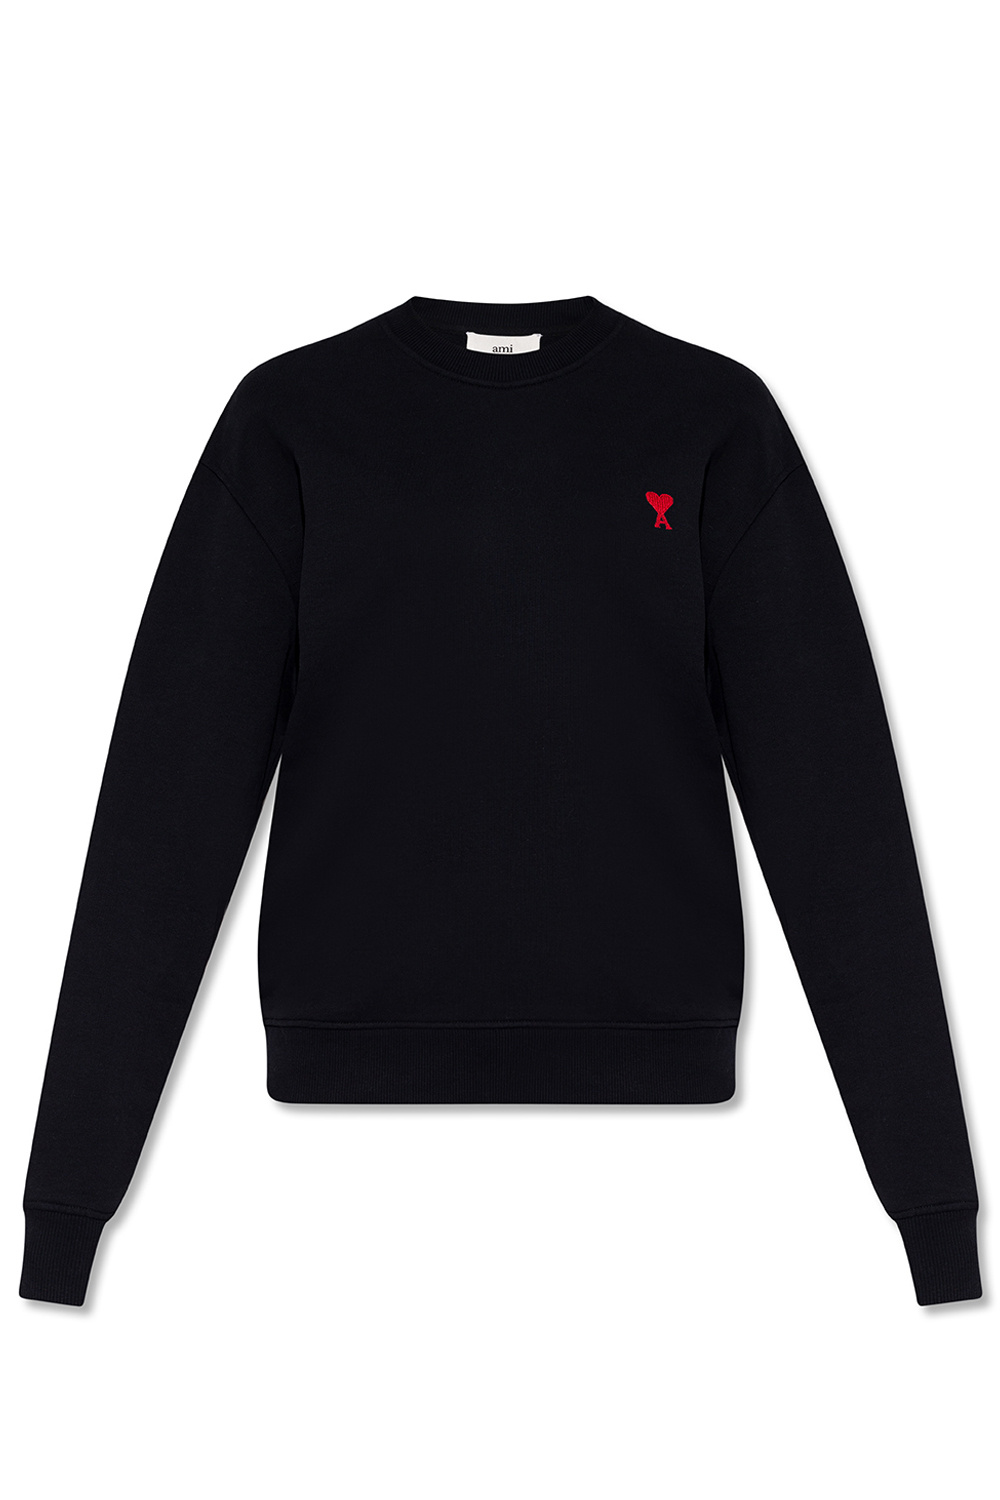 Louis Vuitton Black Cotton 'Paris' 14 Sequin Embellished T-shirt S